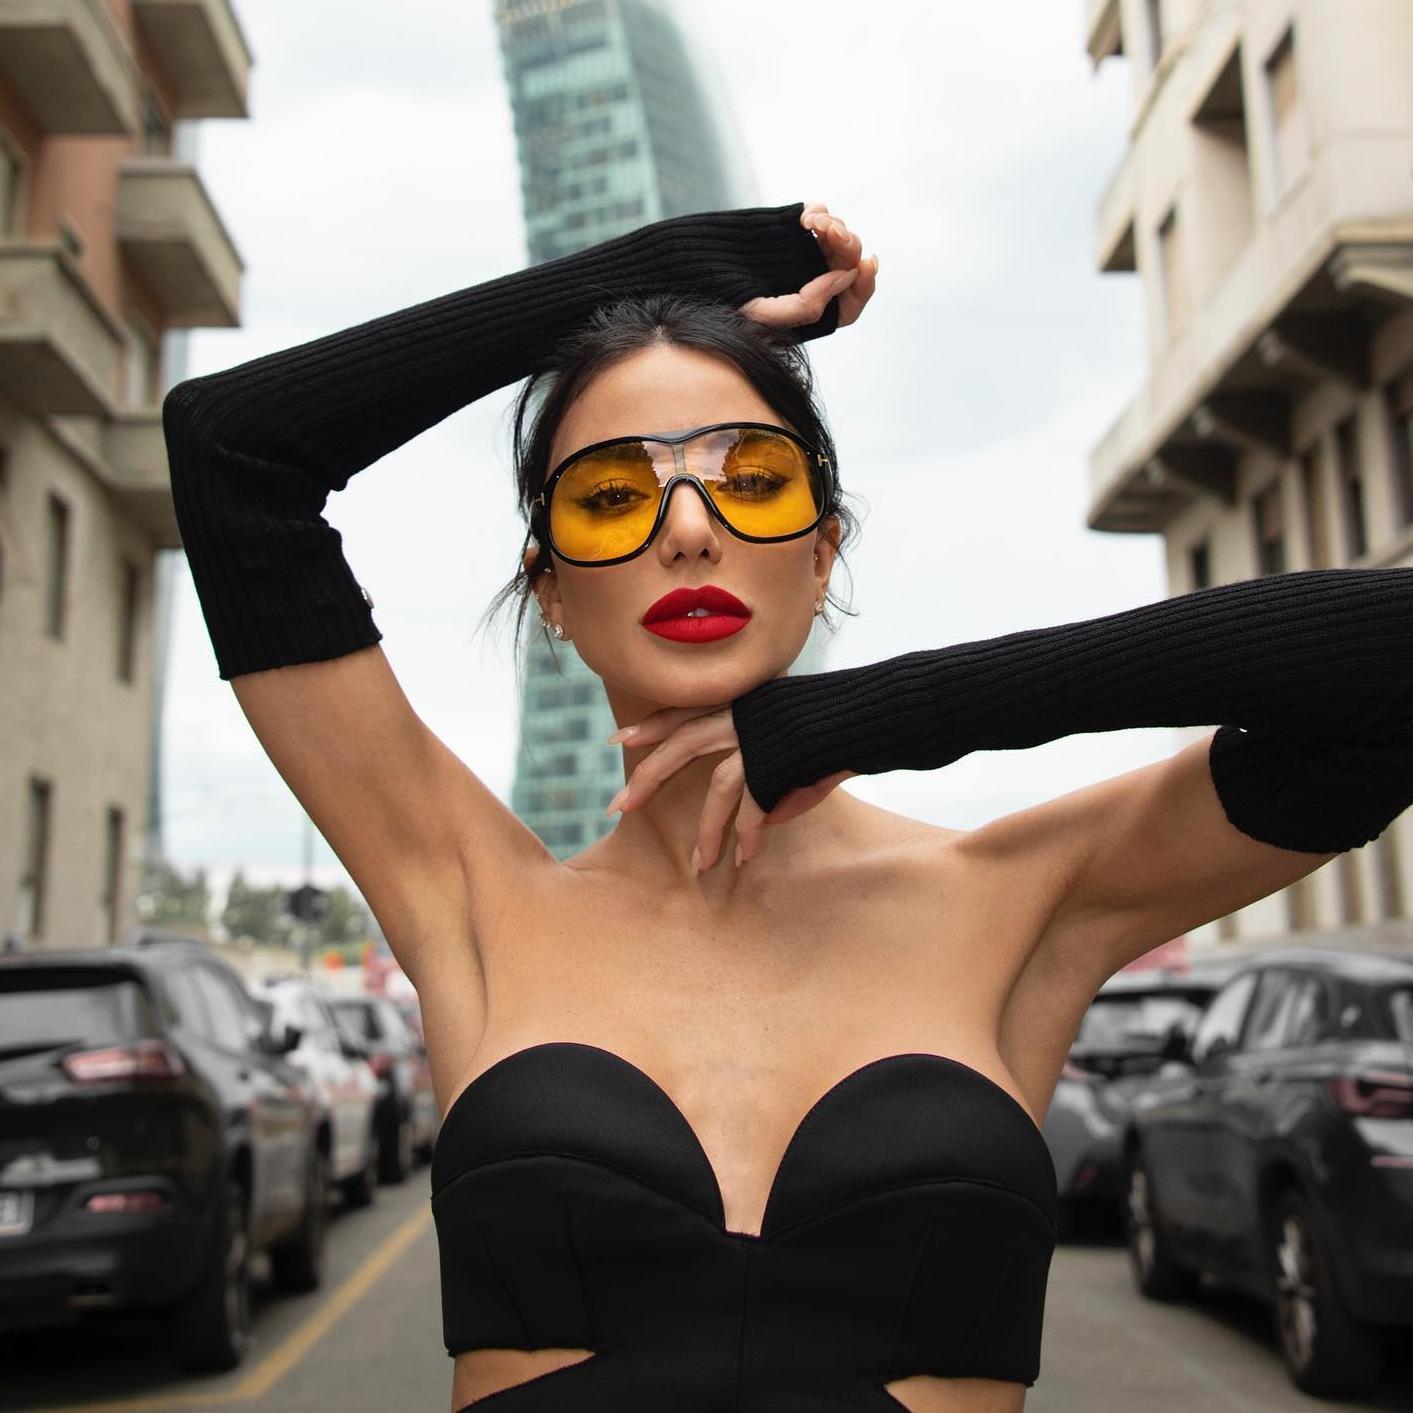 La influencer italiana Chiara Biasi posa con un top negro con guantes, unas gafas con cristal naranja y los labios rojos.